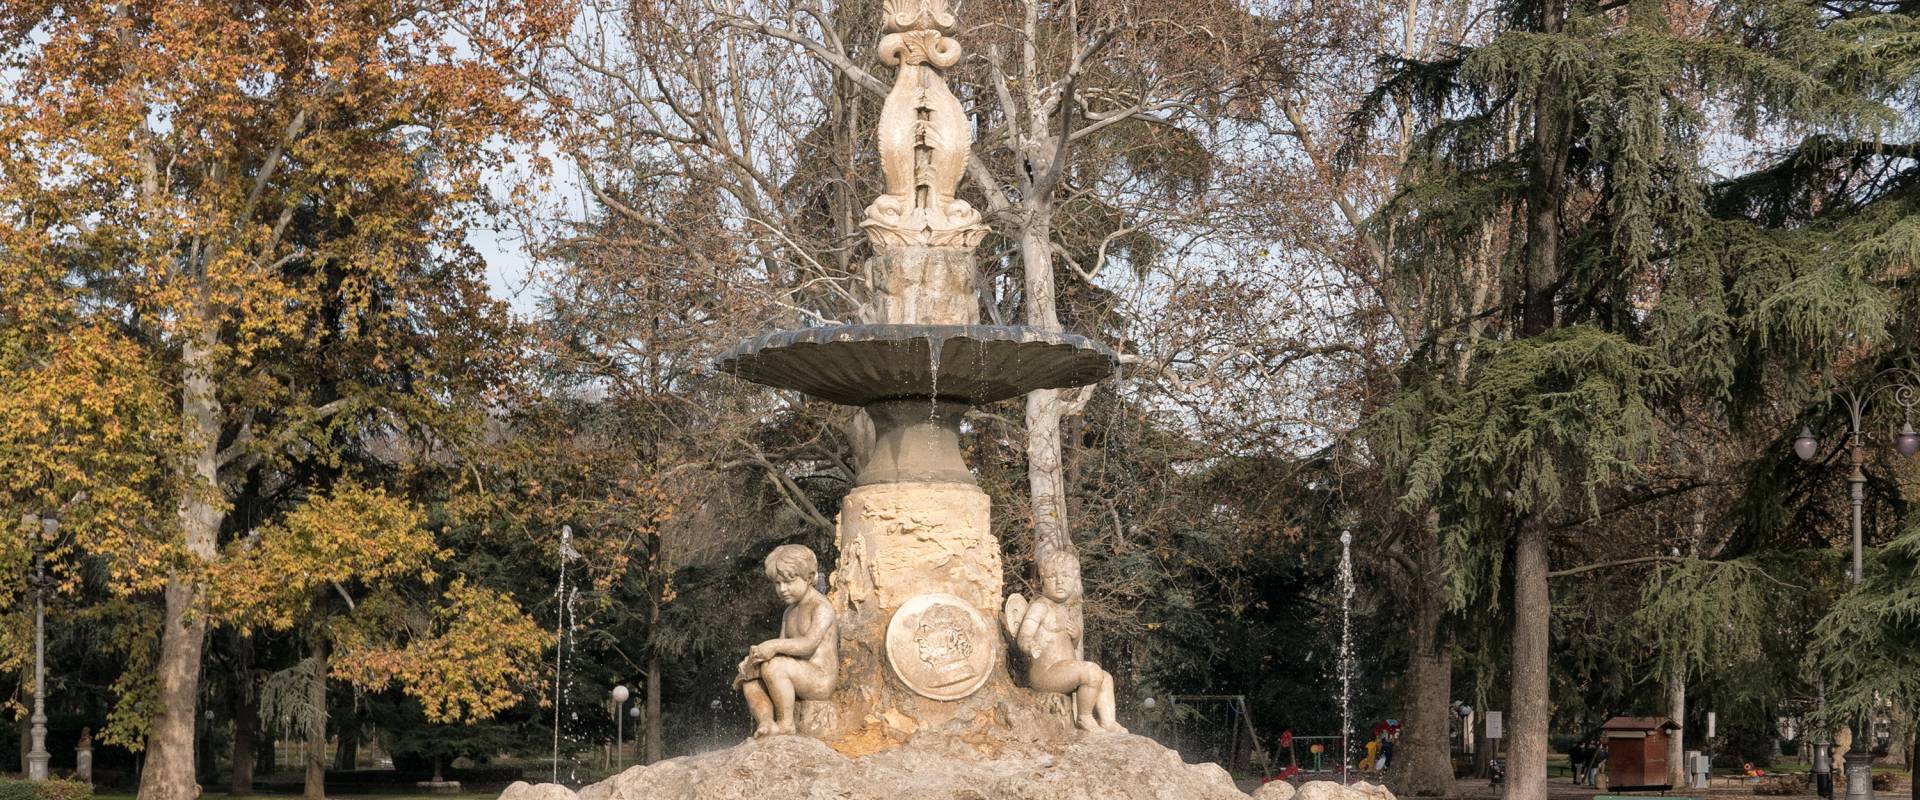 PArco del Popolo, fontana commemorativa photo by PhotoVim